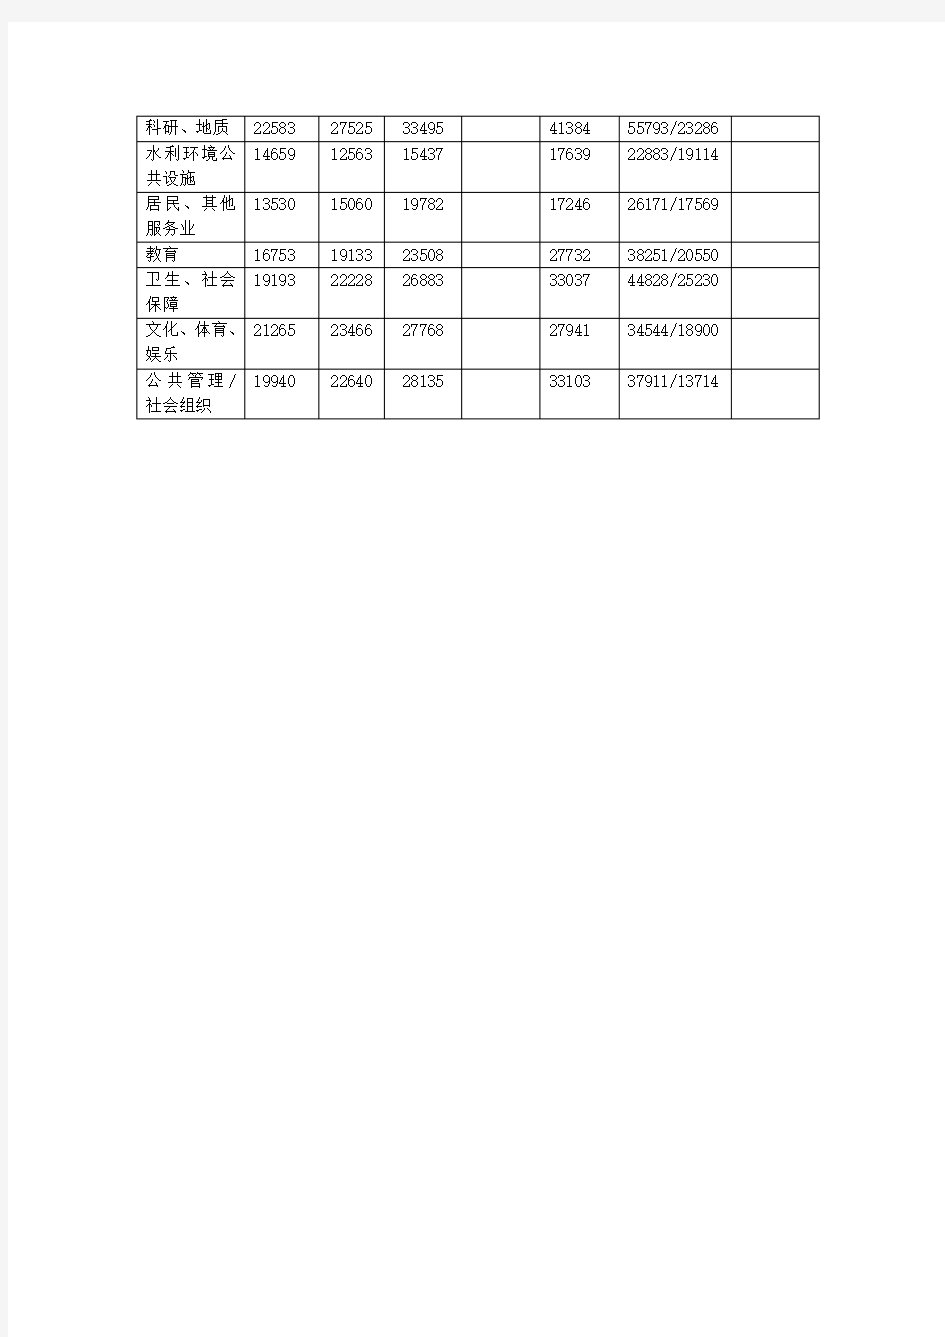 重庆市历年统计数据表